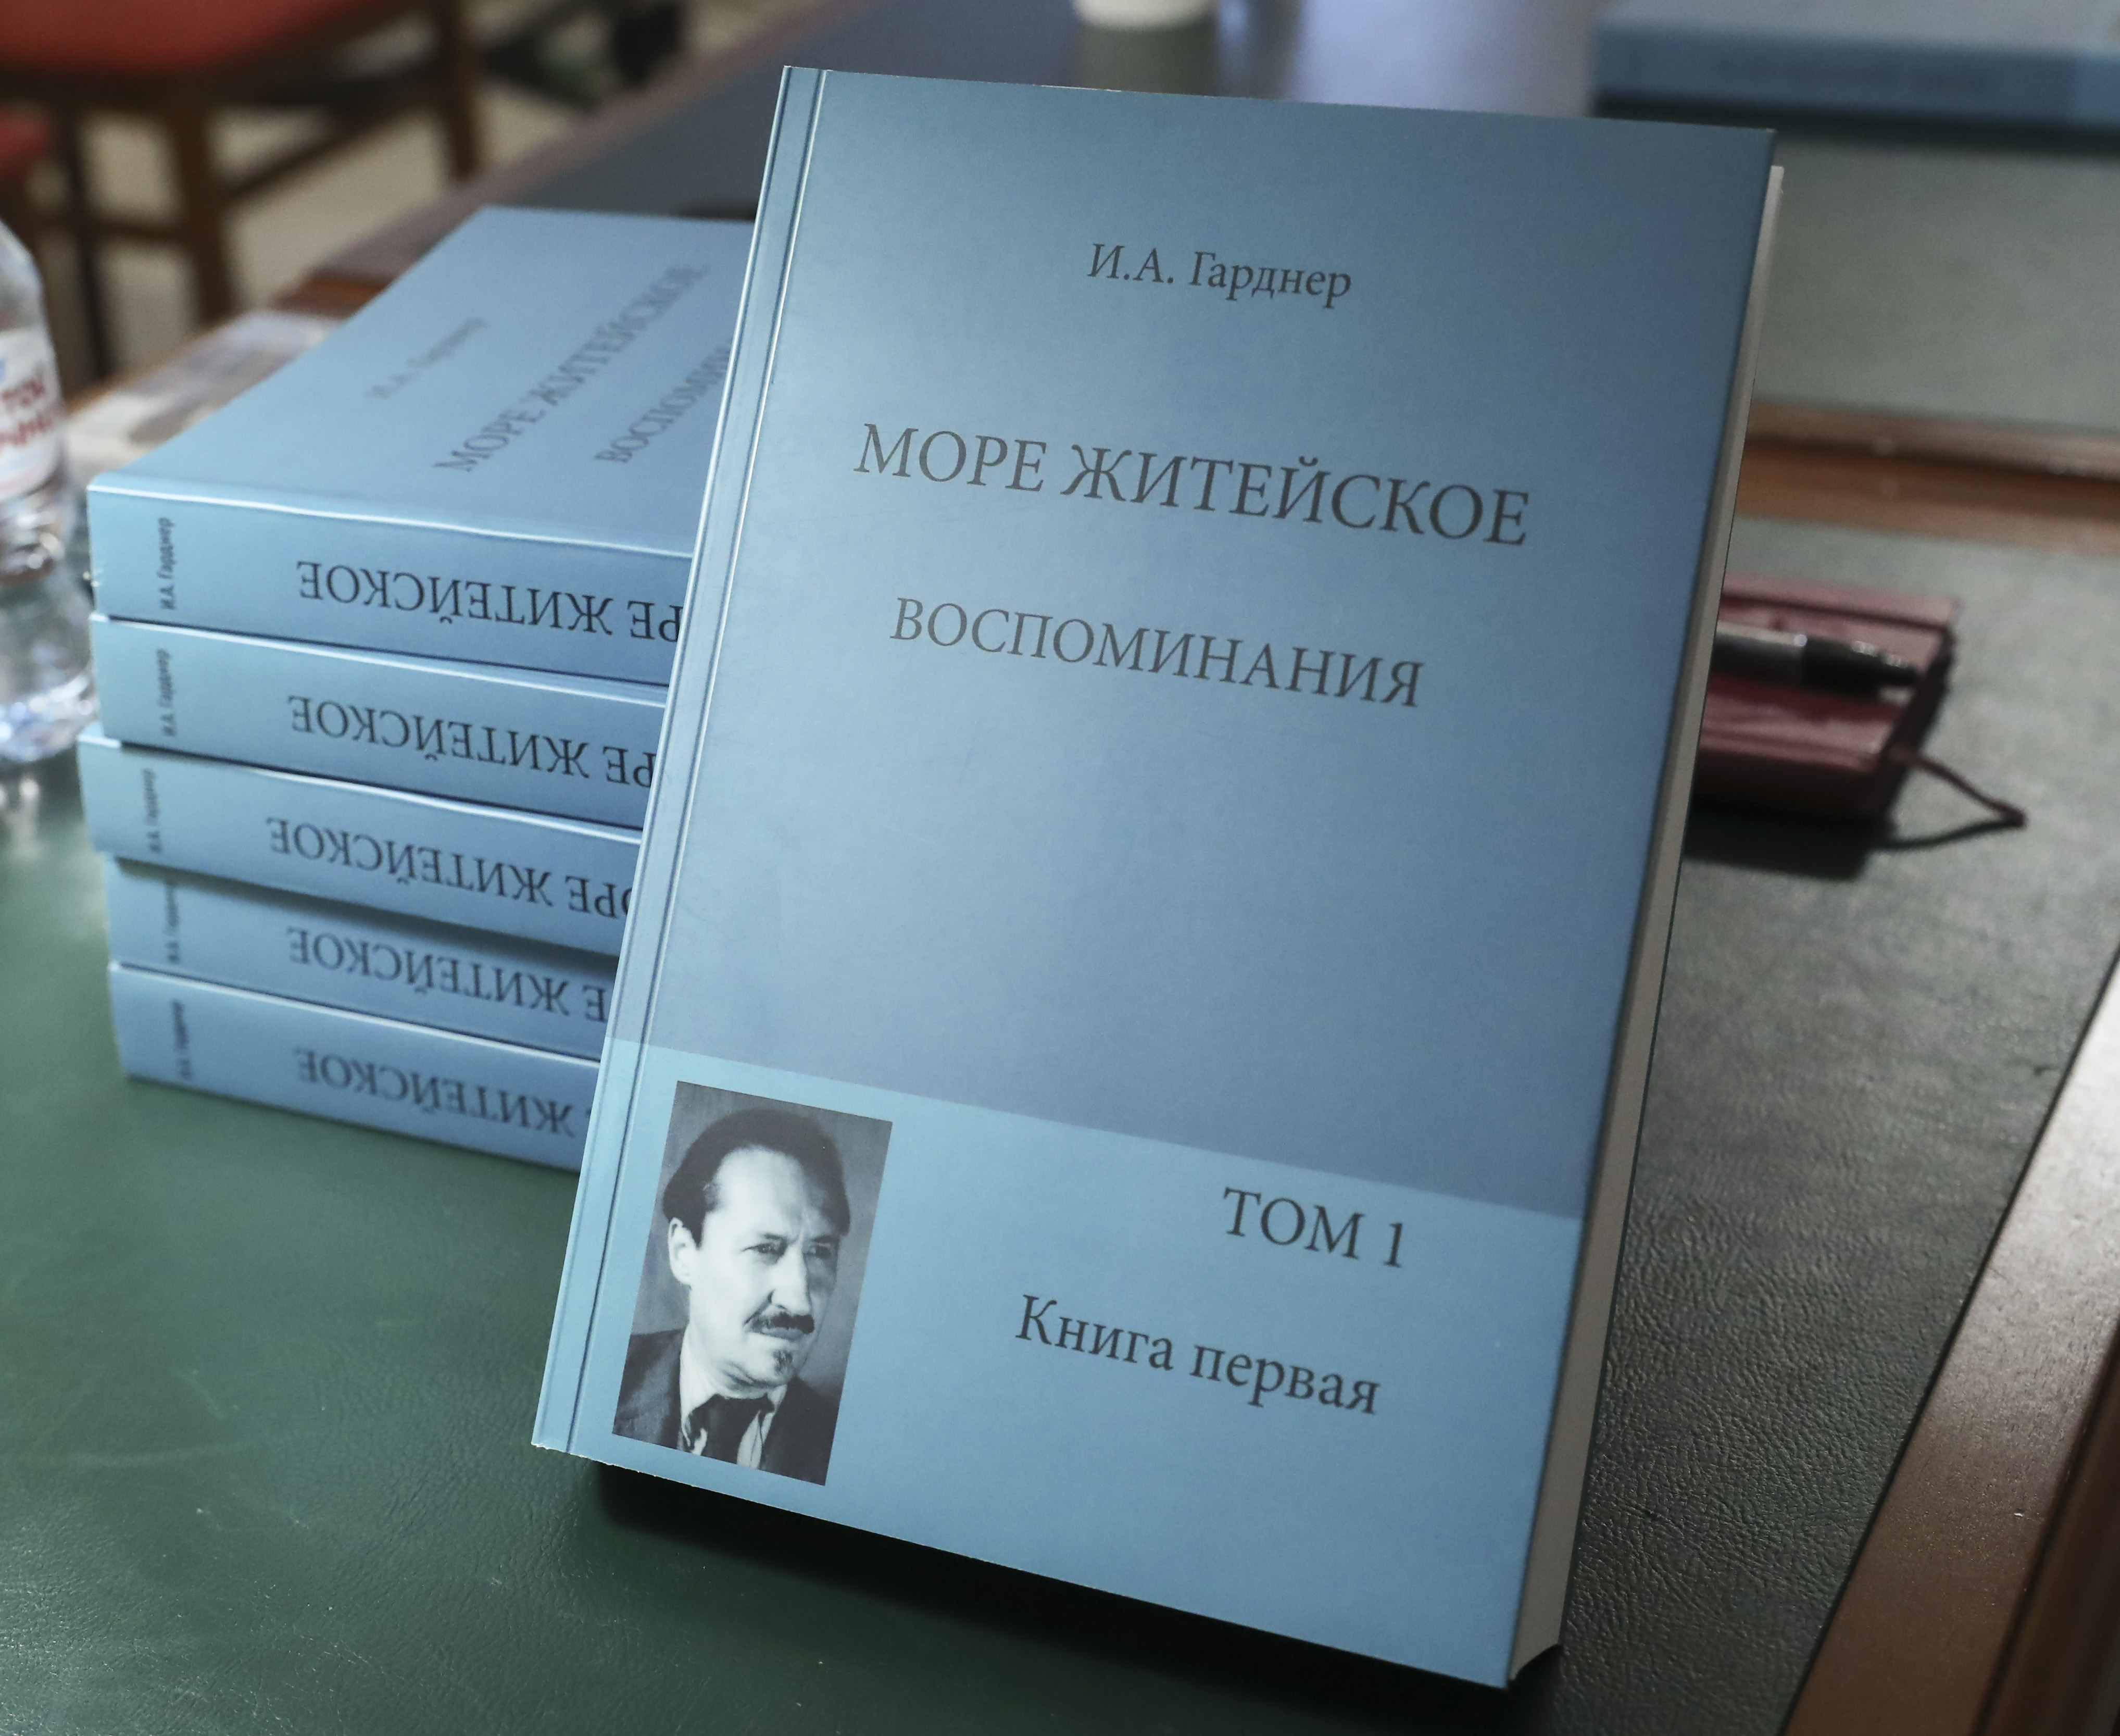 В РГБ состоялась презентация книги «Море житейское: воспоминания в четырёх томах»